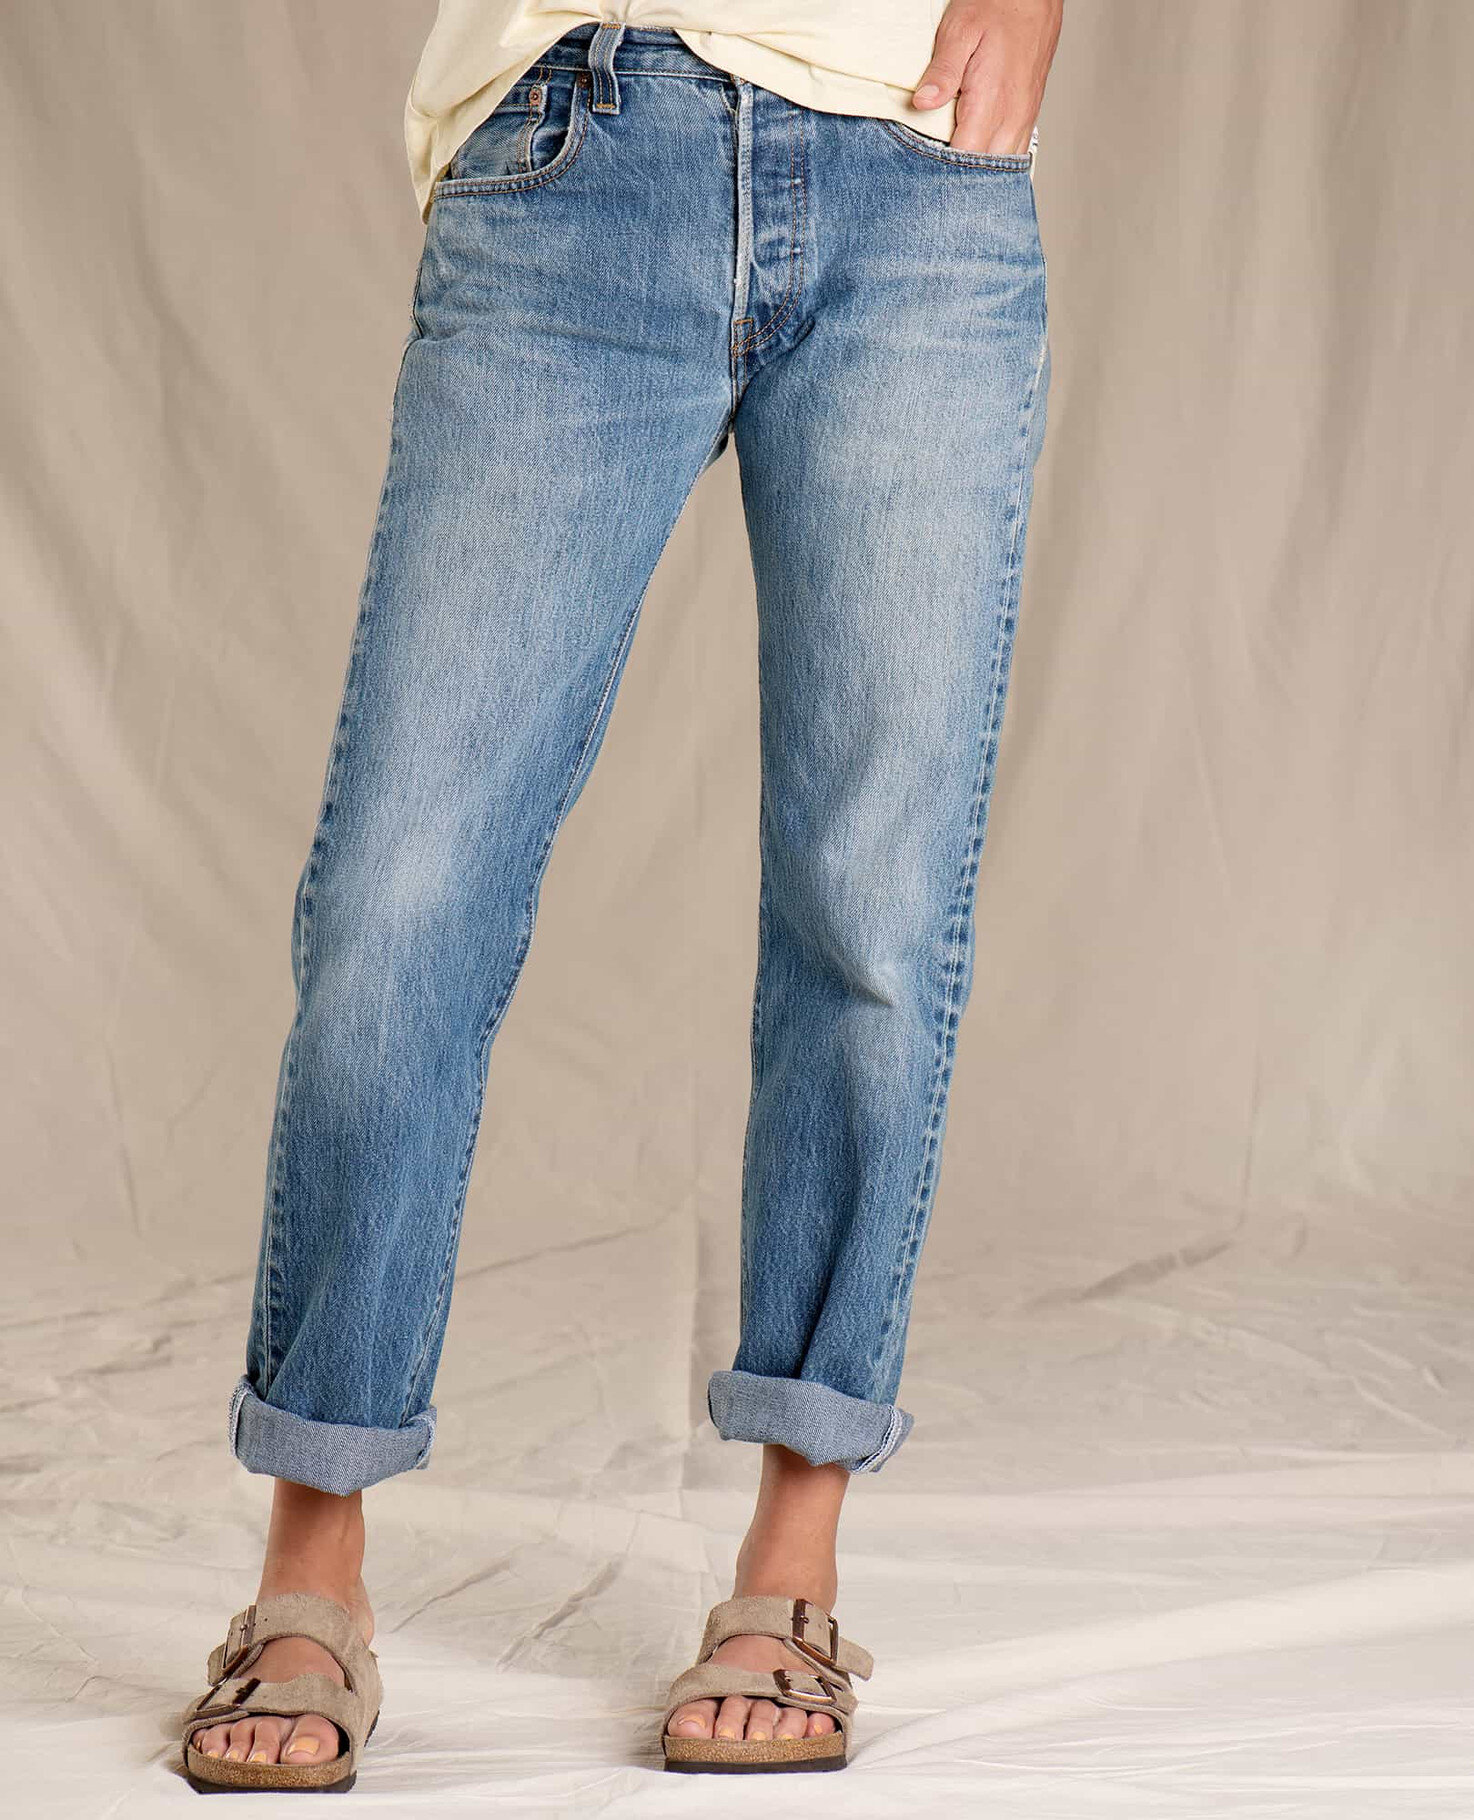 Women's Vintage Levi's 501 Jeans